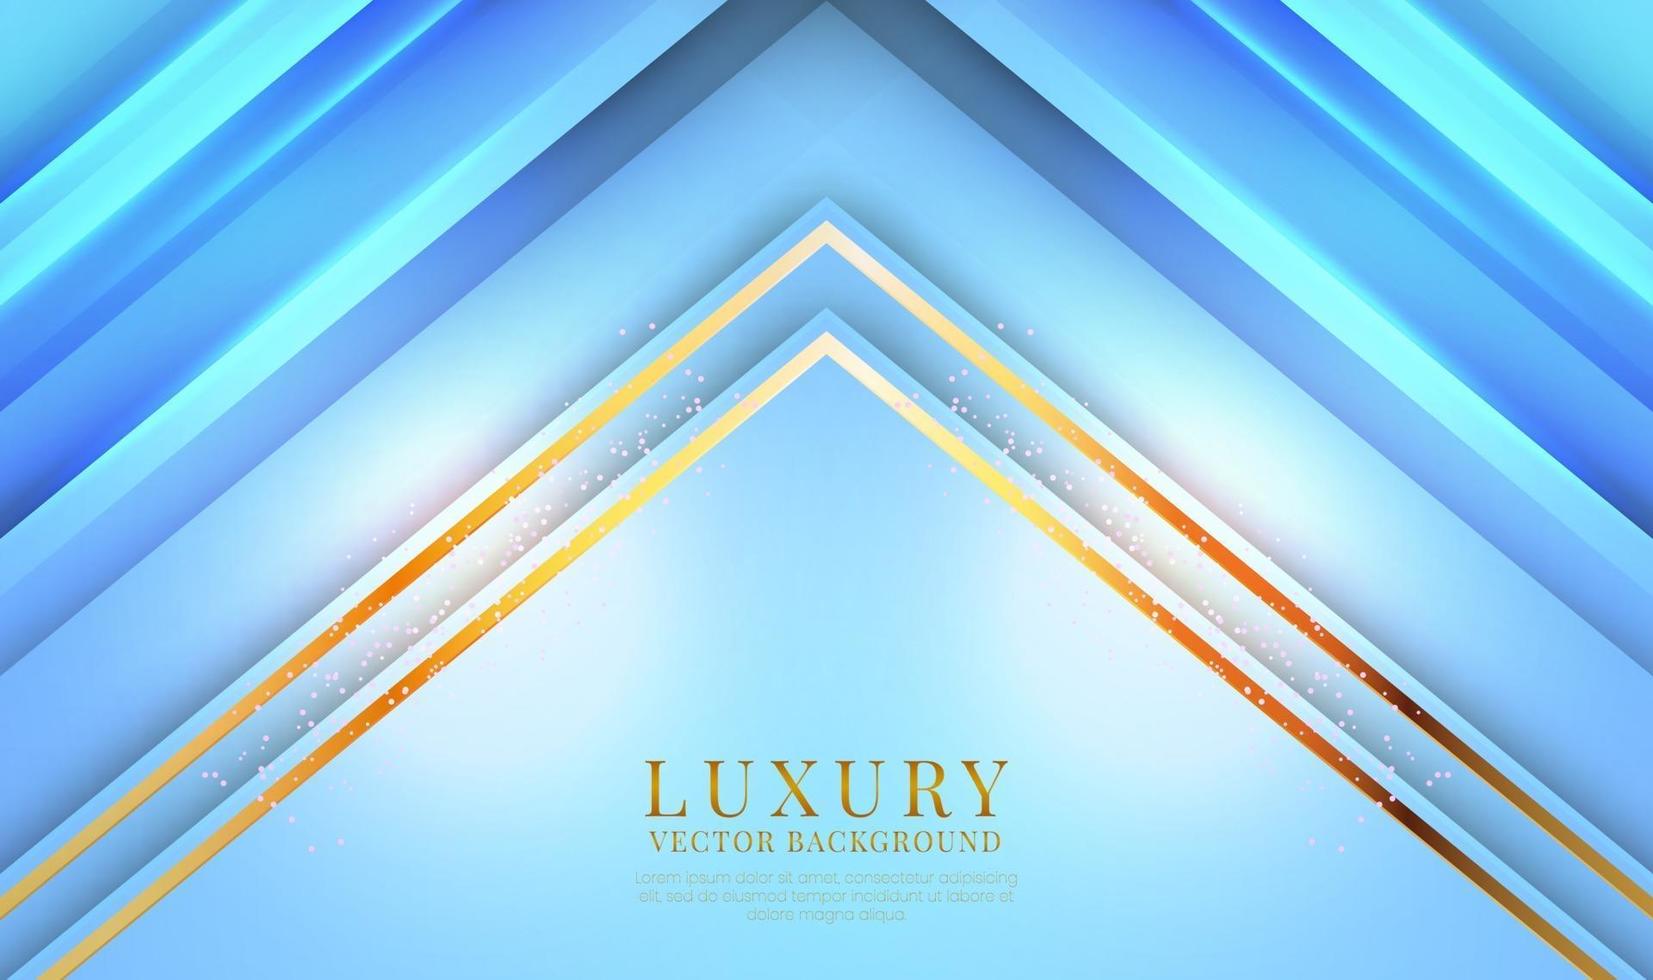 abstracte 3d blauwe luxe achtergrond met gouden lijnen stijl. overlappende lagen op lichte ruimte met decoratie met glitterstippen. moderne grafische sjabloonelementen voor spandoek, poster, flyer, omslag of brochure vector